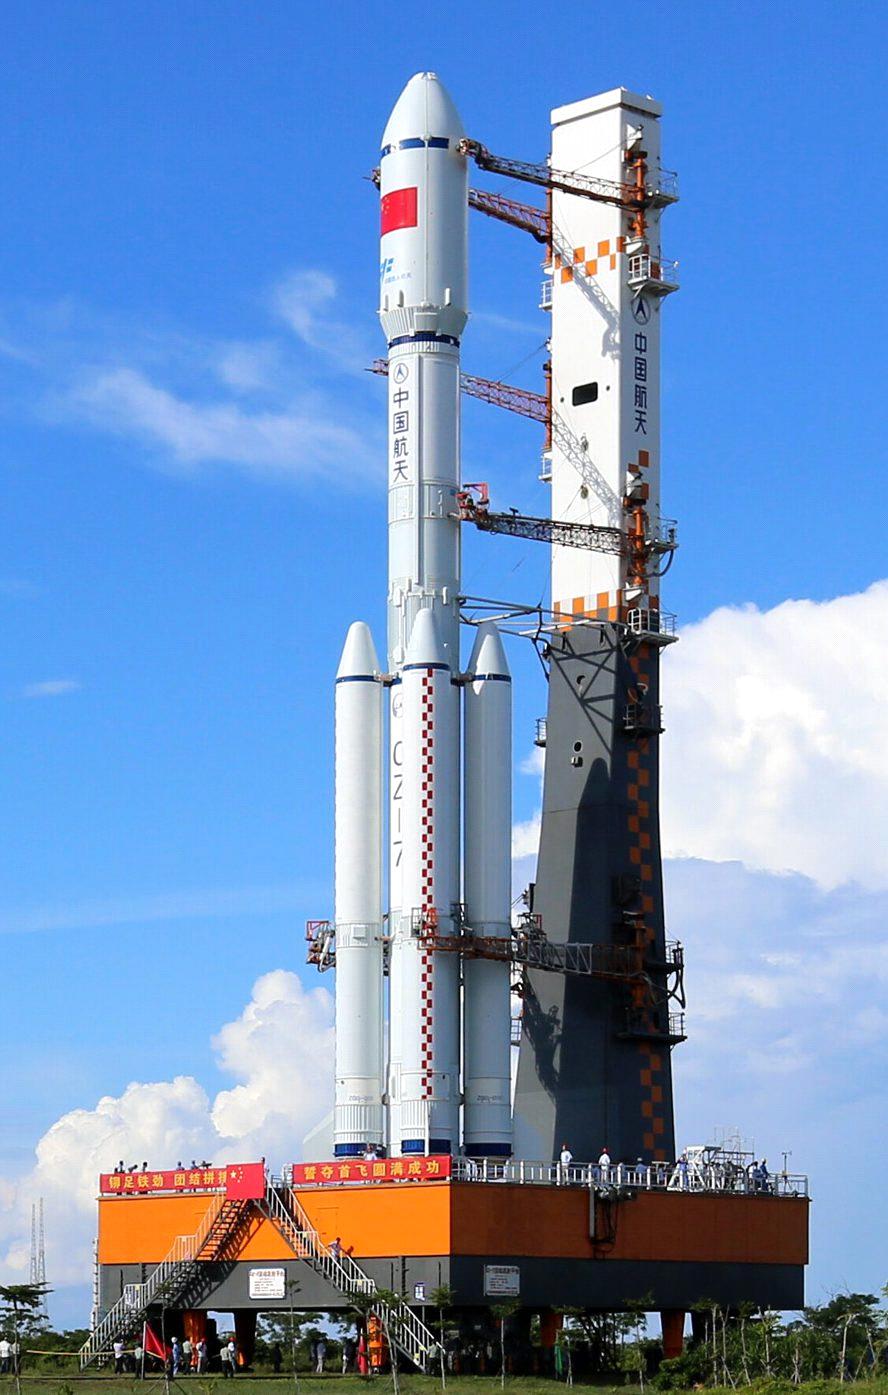 2016년에 두 번째 발 Ÿ Pad 138 : CZ-2C, CZ-2D 발사 사가 이루어 졌다. 이동형 발사차량에 발사관에 삽입된 형태로 발사가 이루어진다.